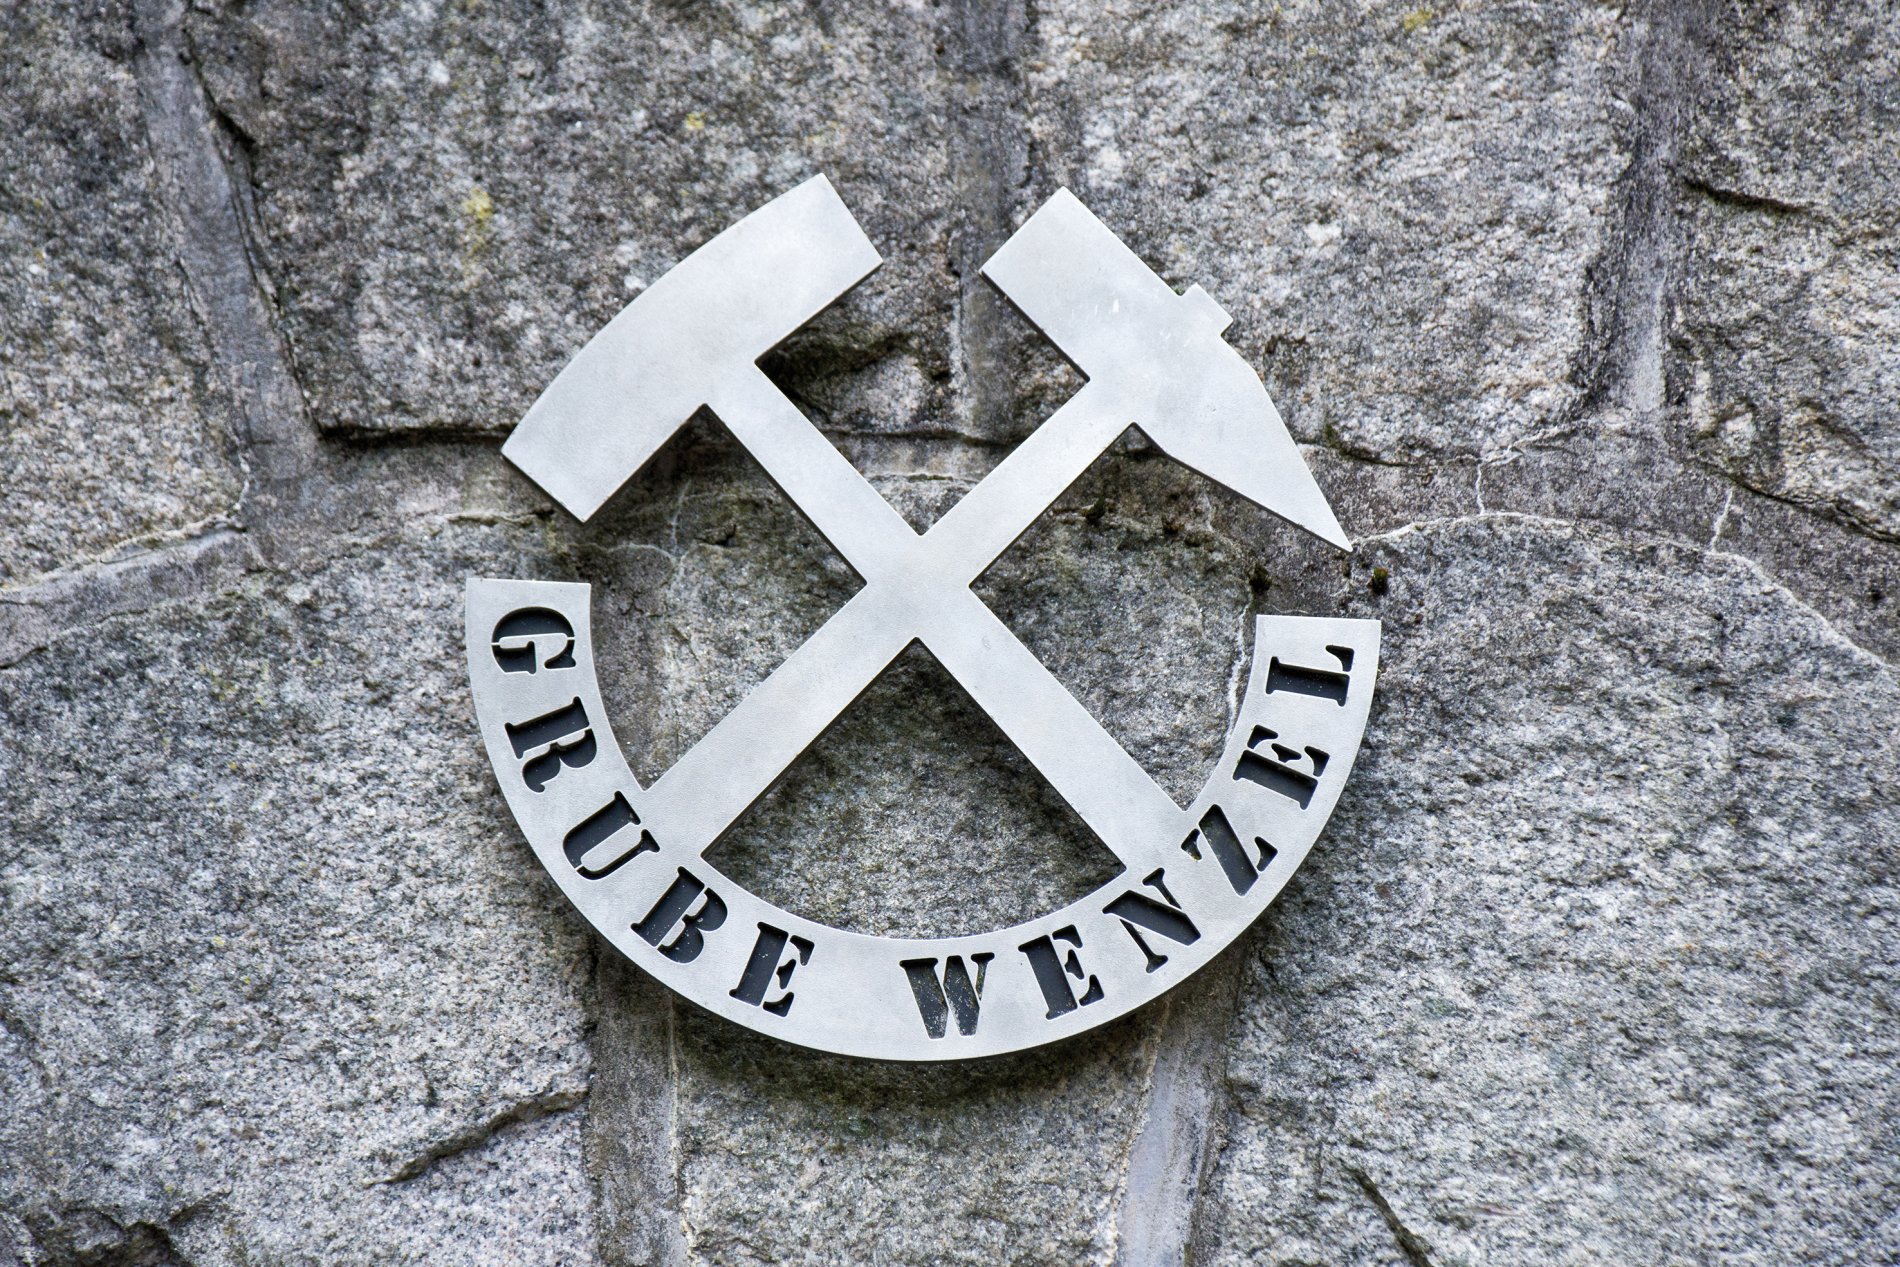 Grube Wenzel / Urheber: Gemeinde Oberwolfach